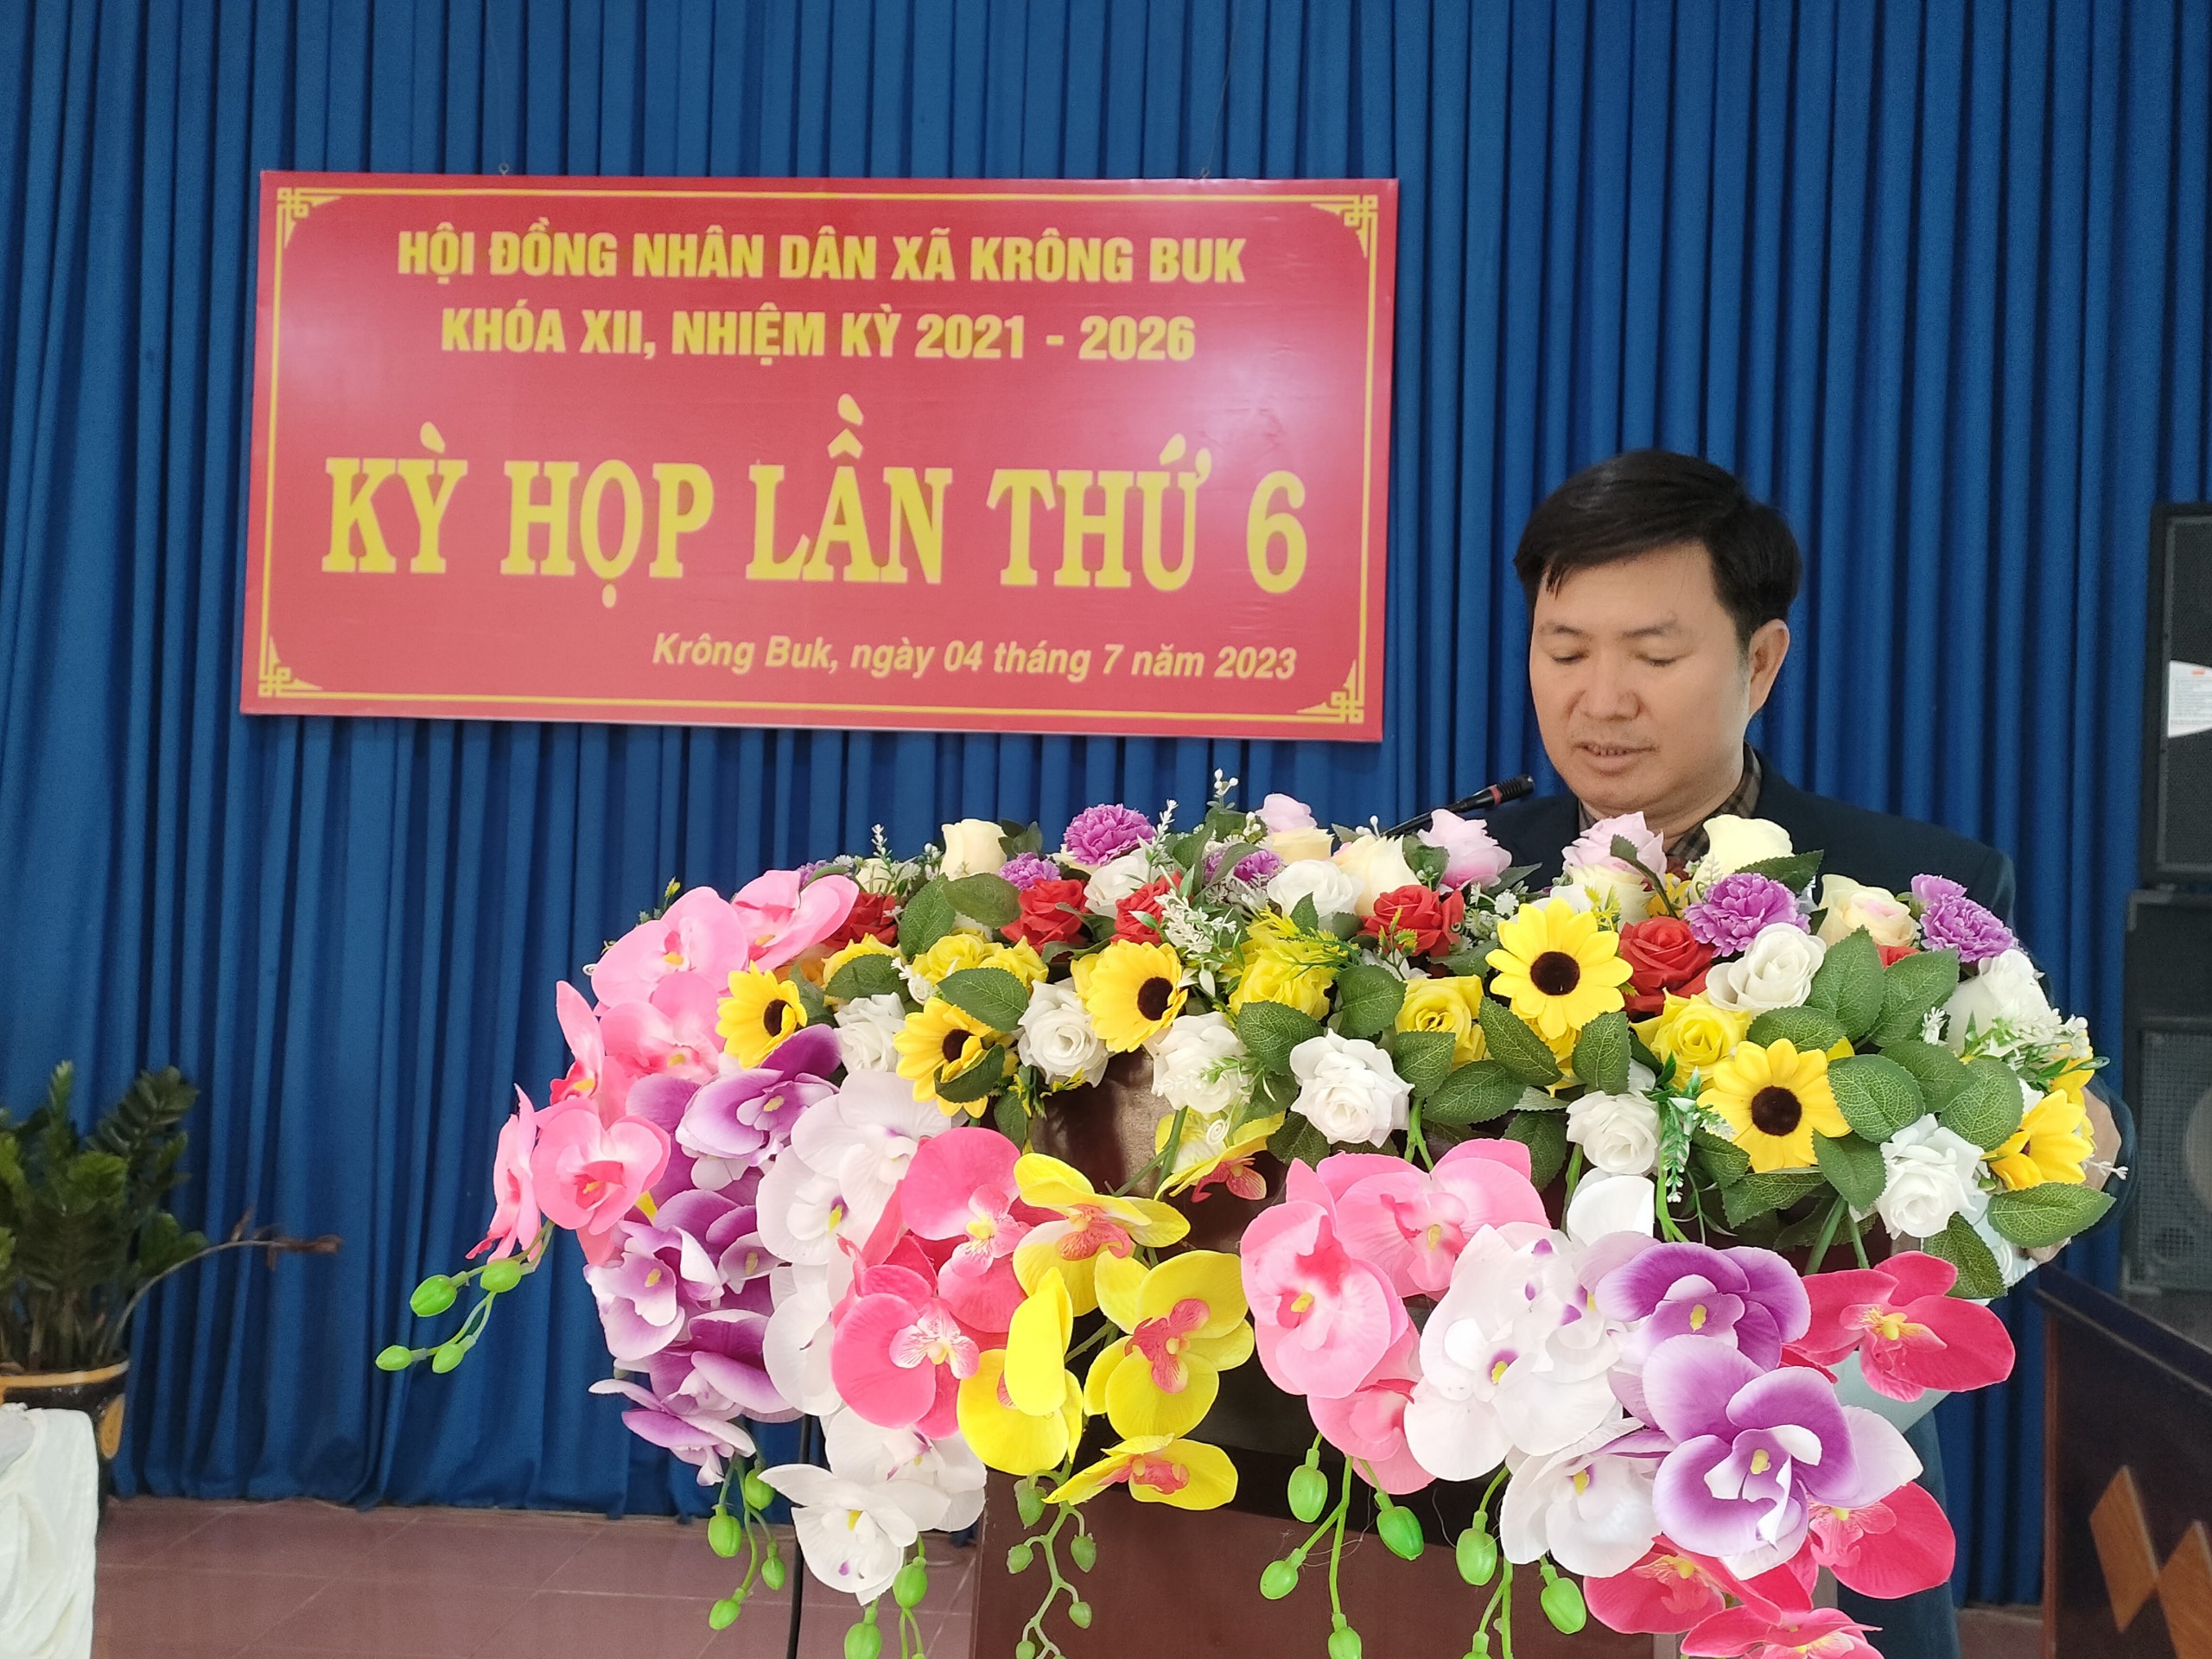 HĐND xã Krông Buk tổ chức Kỳ họp giữa năm 2023